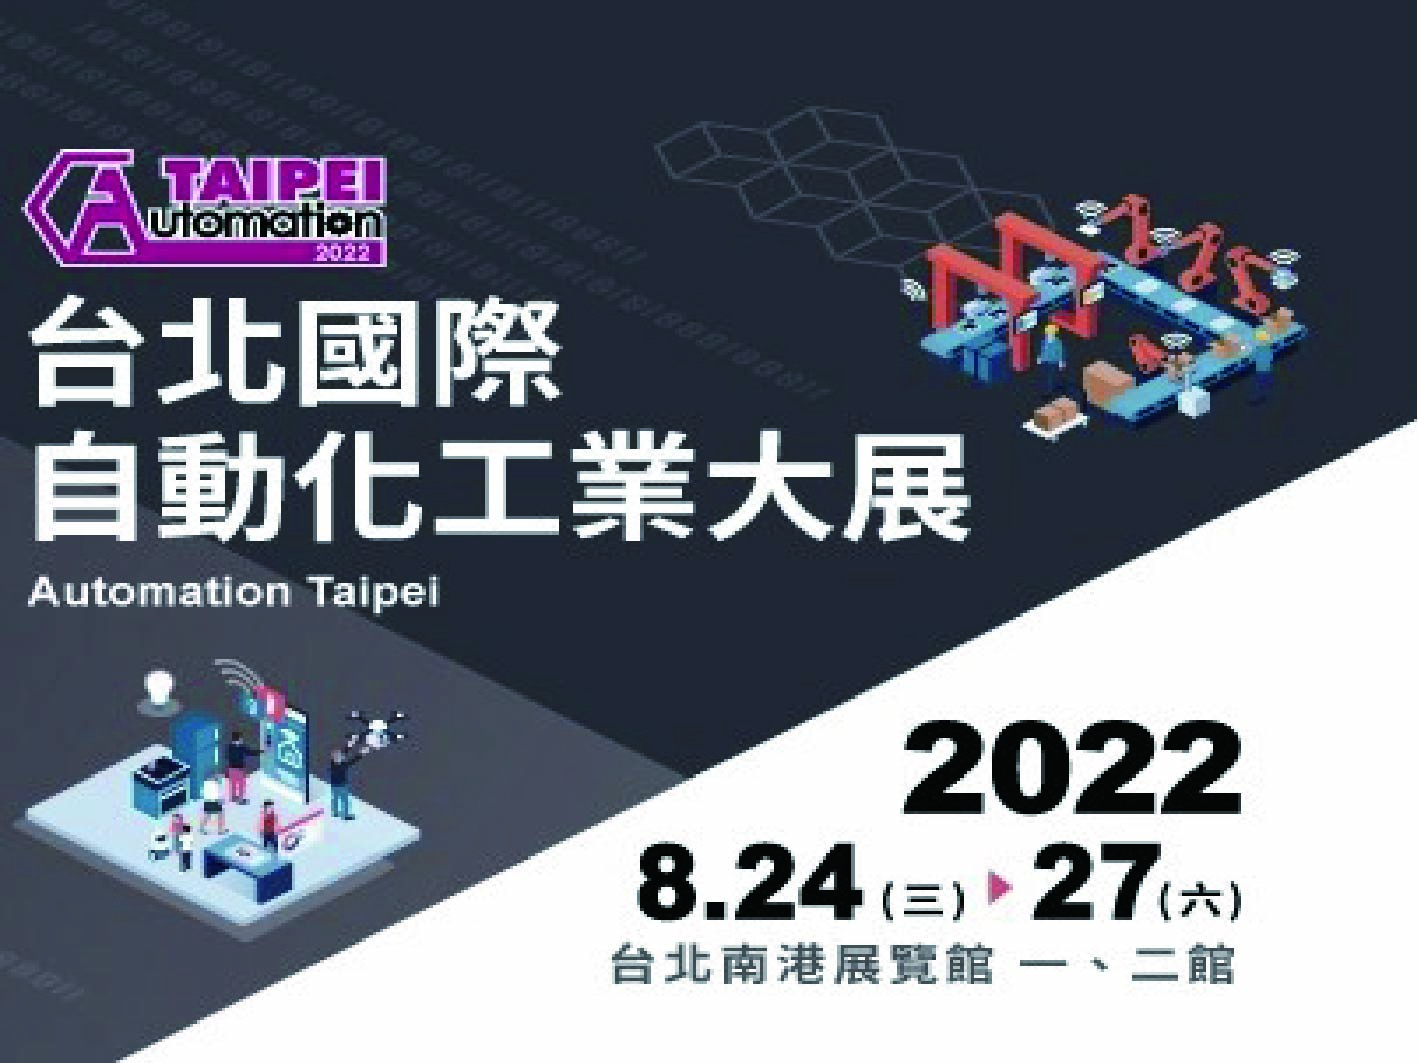 2022 Automation Taipei